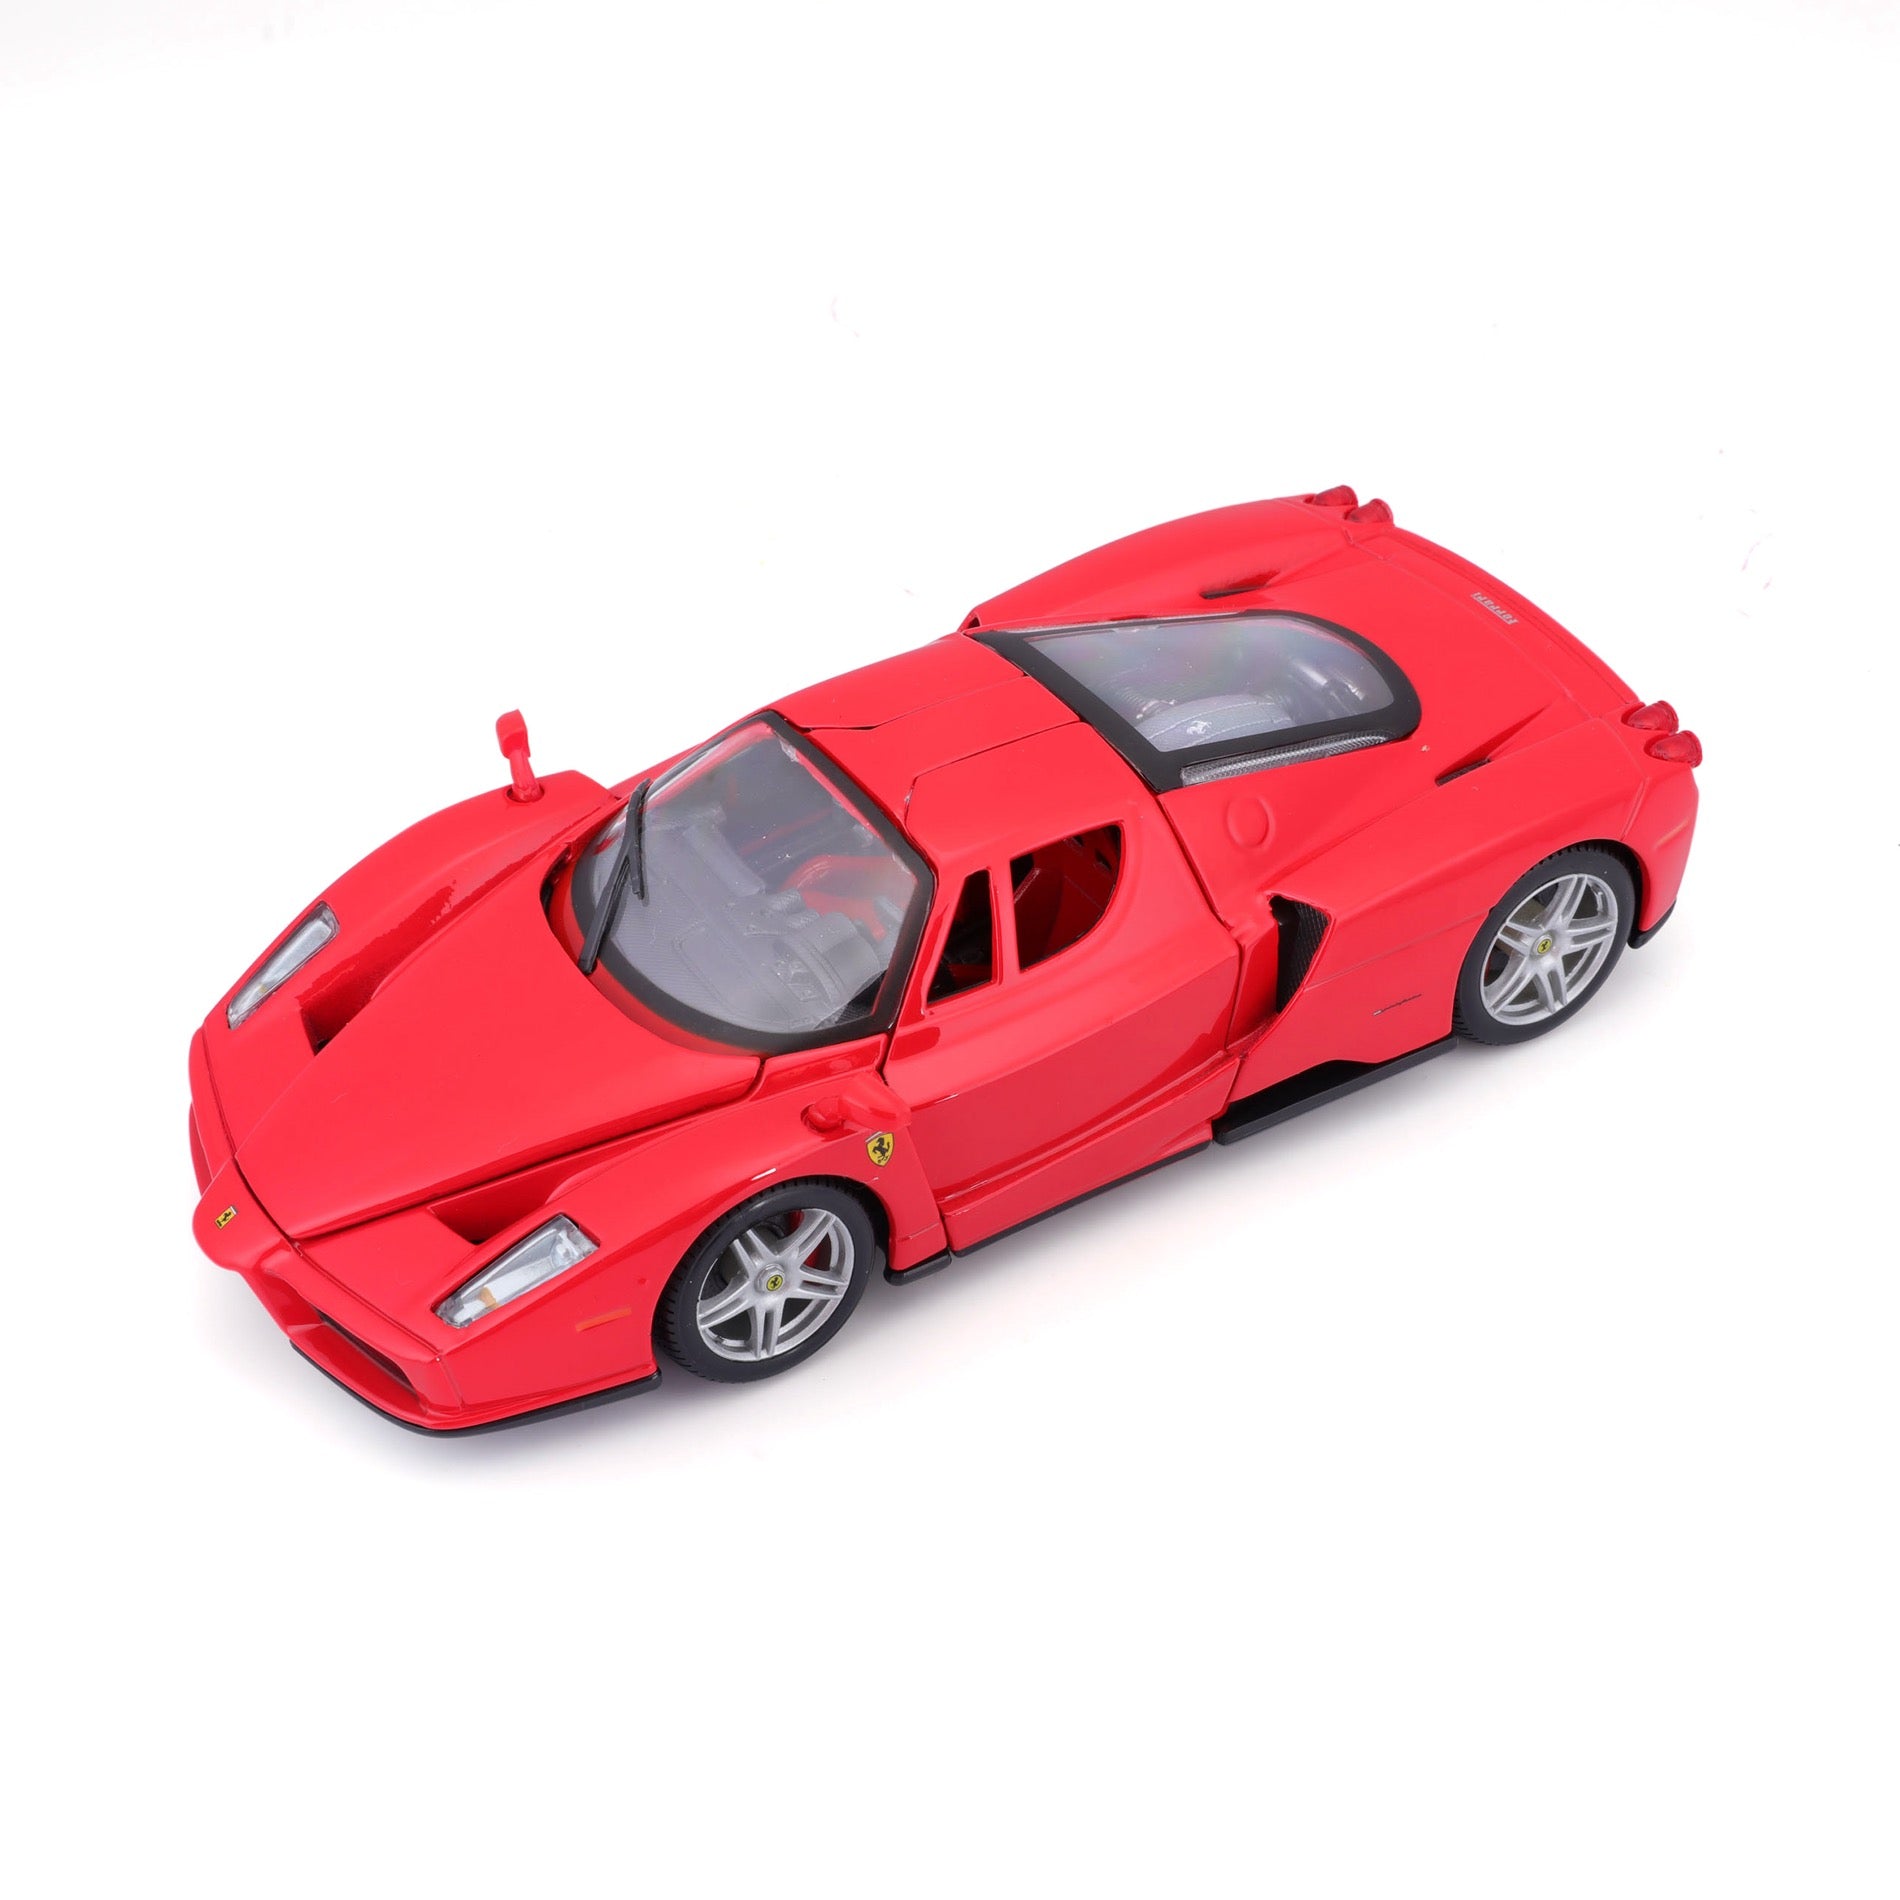 18-26006 RD - Bburago - 1:24 - Ferrari R&P - Enzo Ferrari Rossa